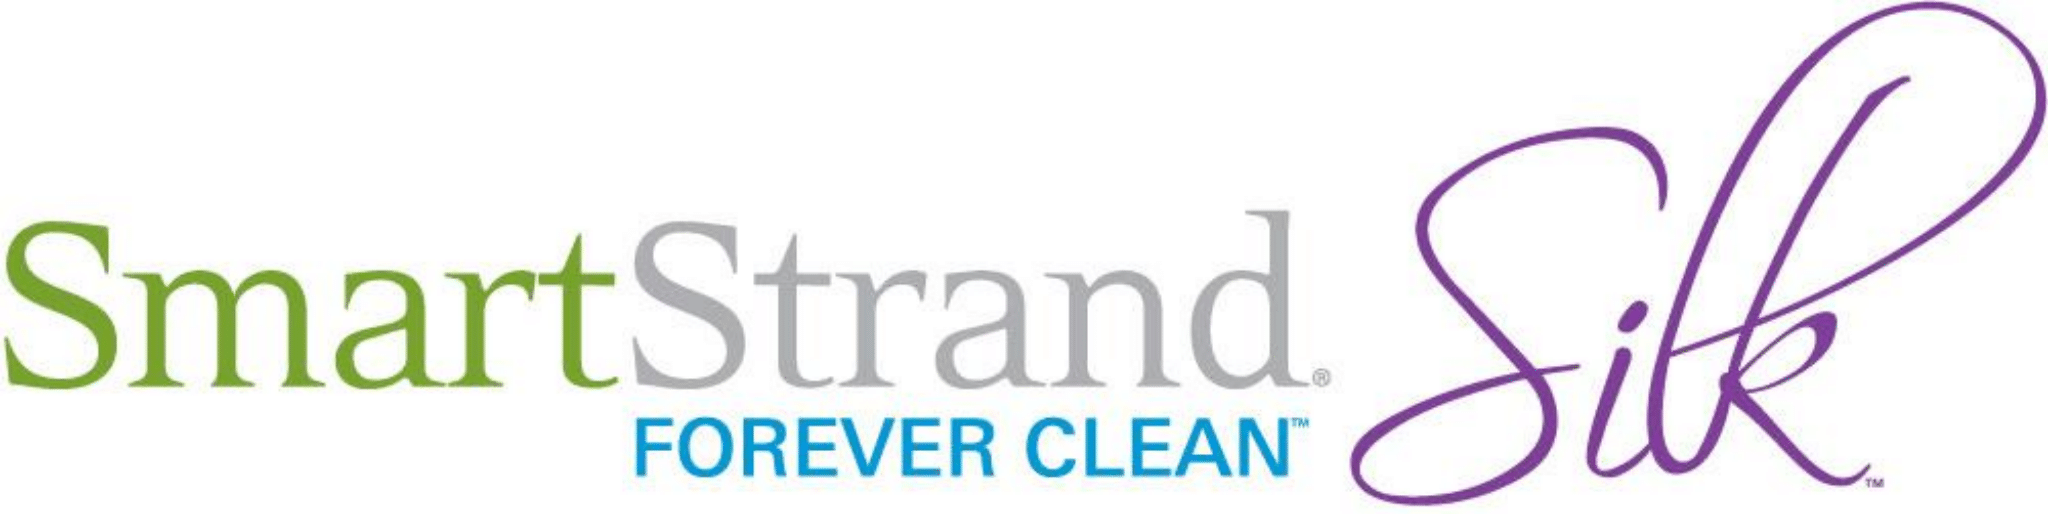 SmartStrand Silk Forever Clean